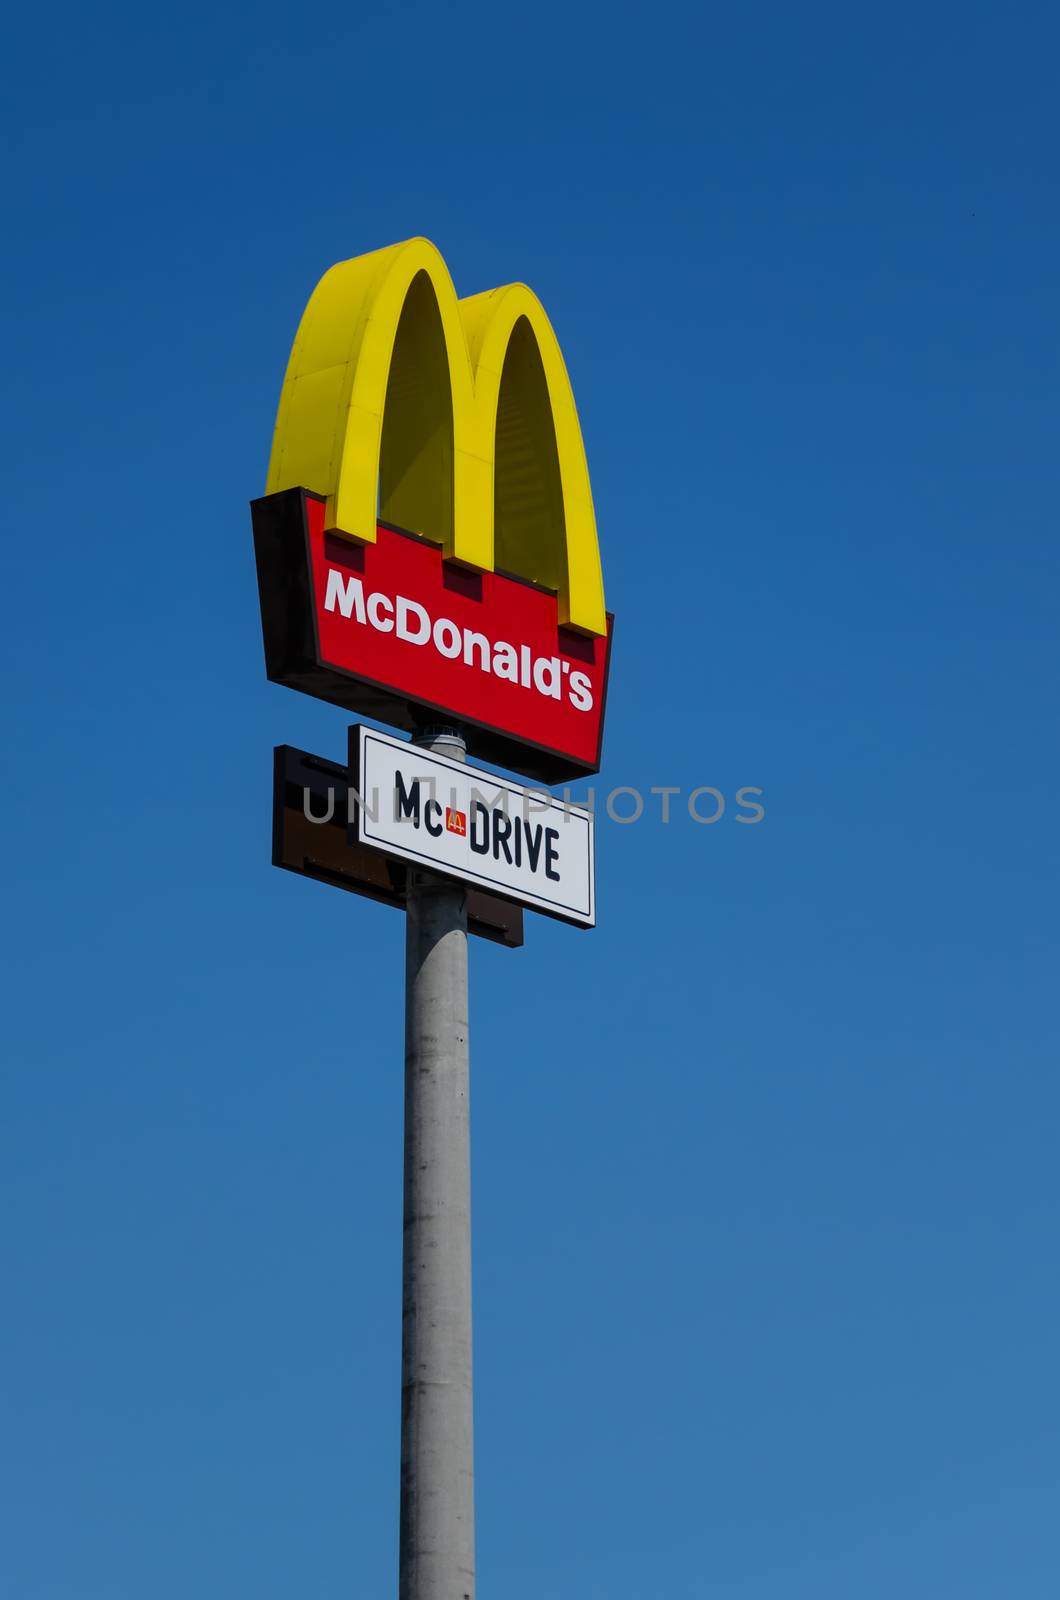 McDonalds logo on blue sky background by Attila